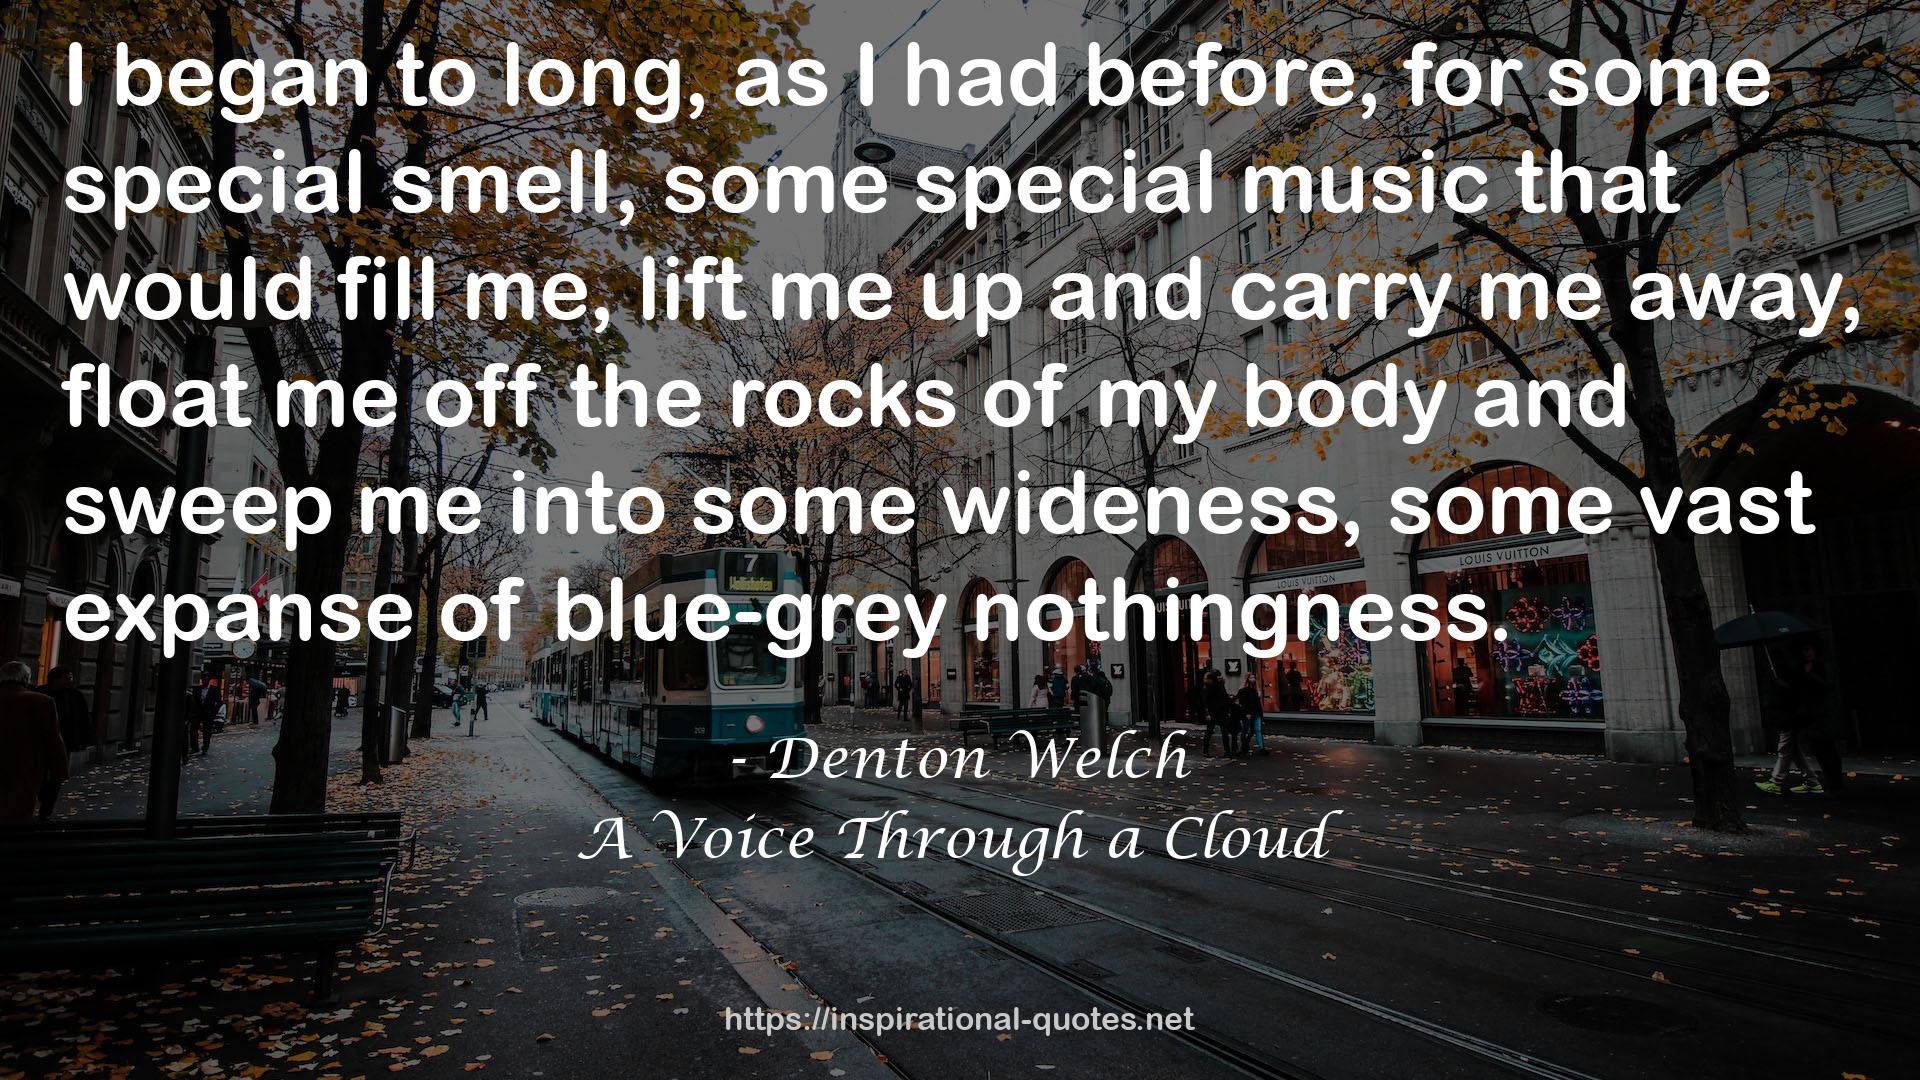 A Voice Through a Cloud QUOTES